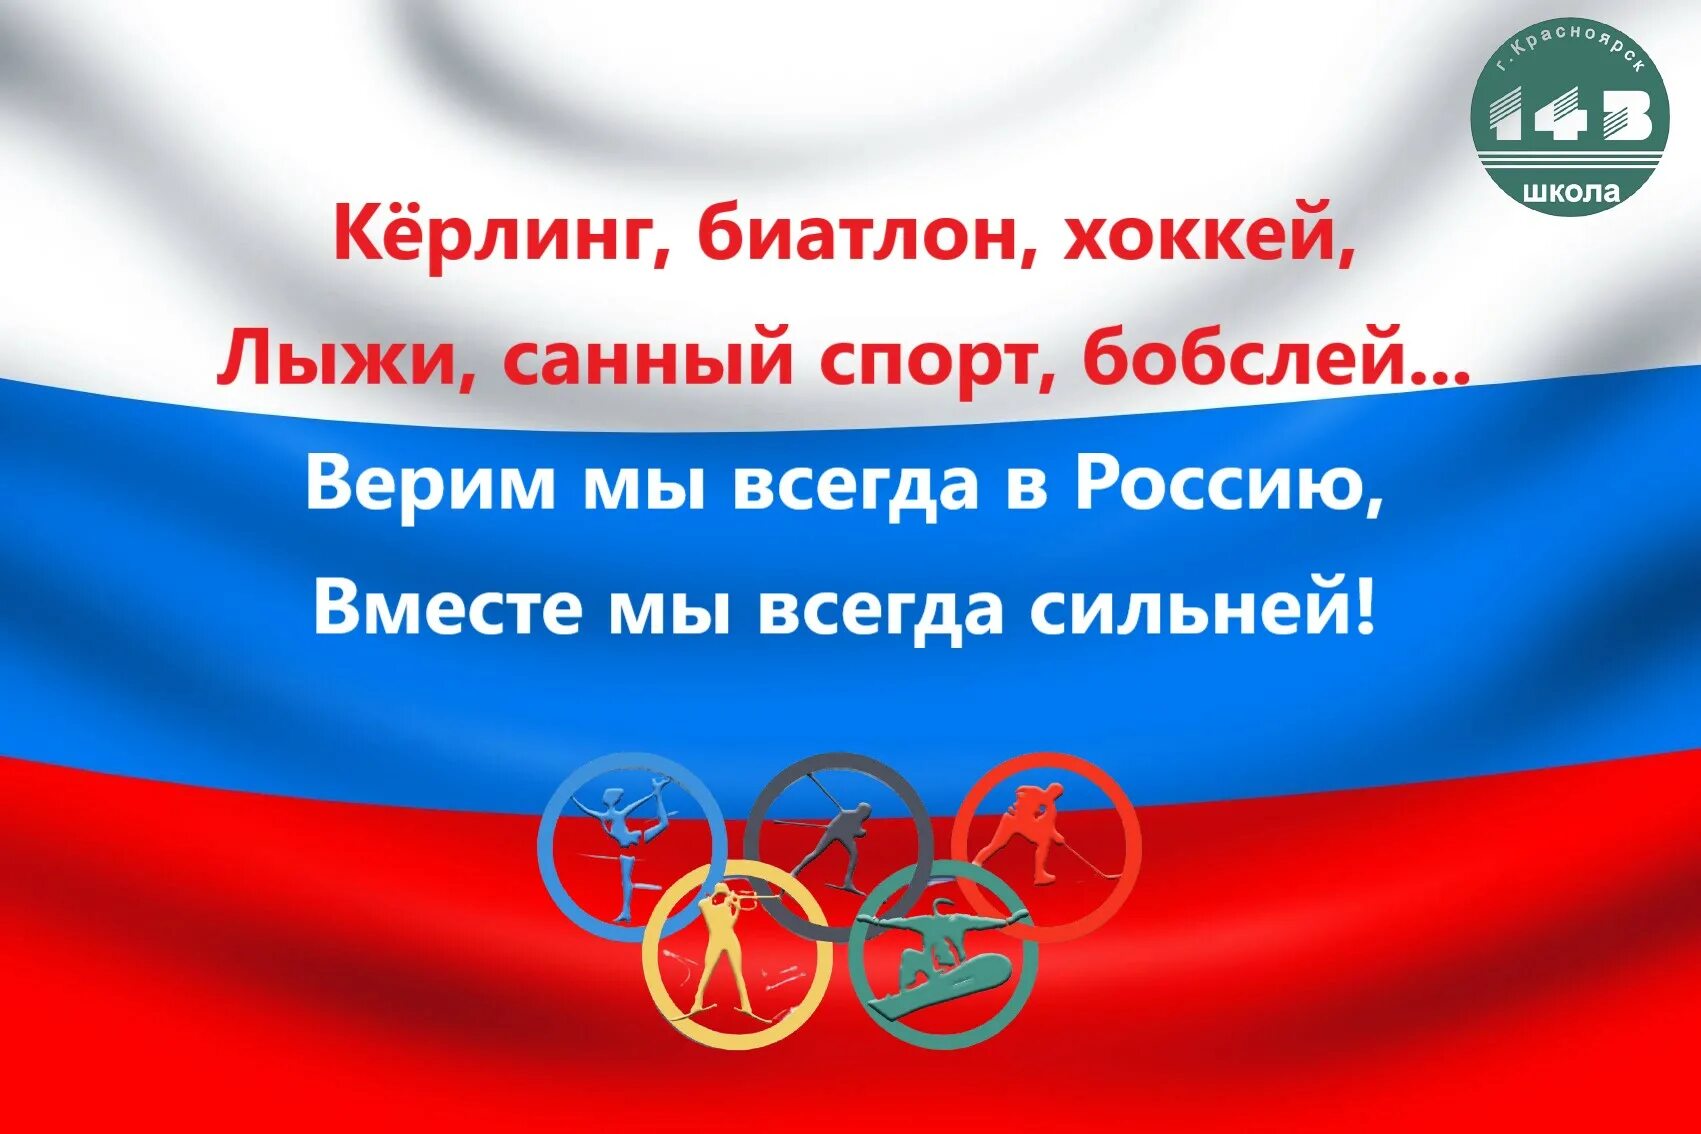 Россия вместе мы сила. Вместе мы сила мы верим в Россию. Мы вместе за Россию. Картинка вместе мы сила верим в Россию.